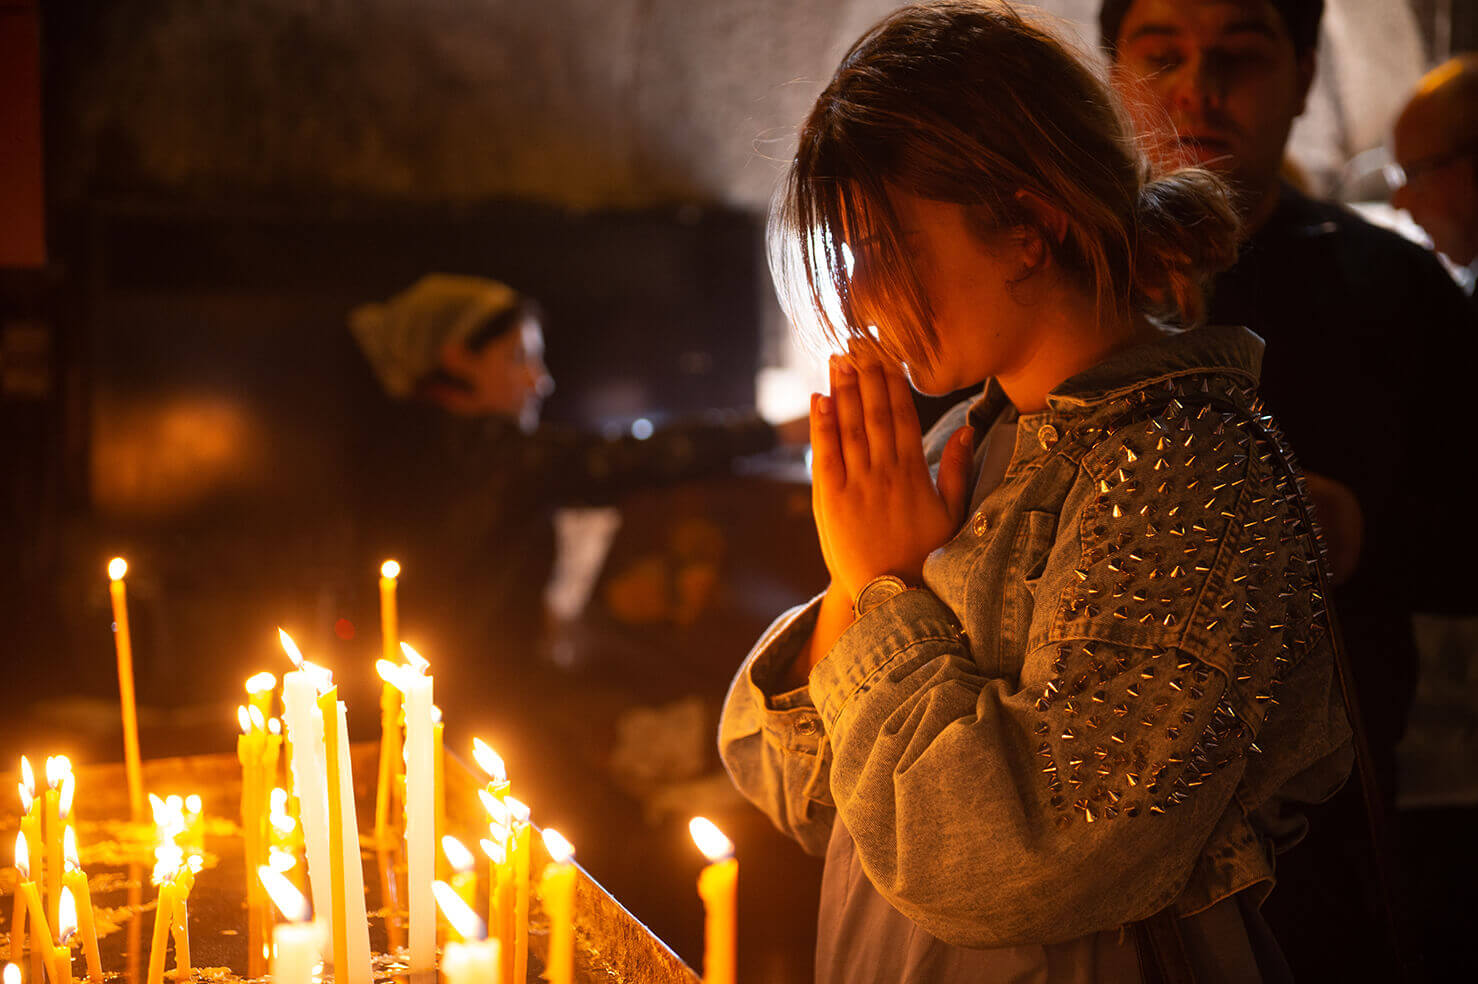 A woman prays in a church in Armenia.